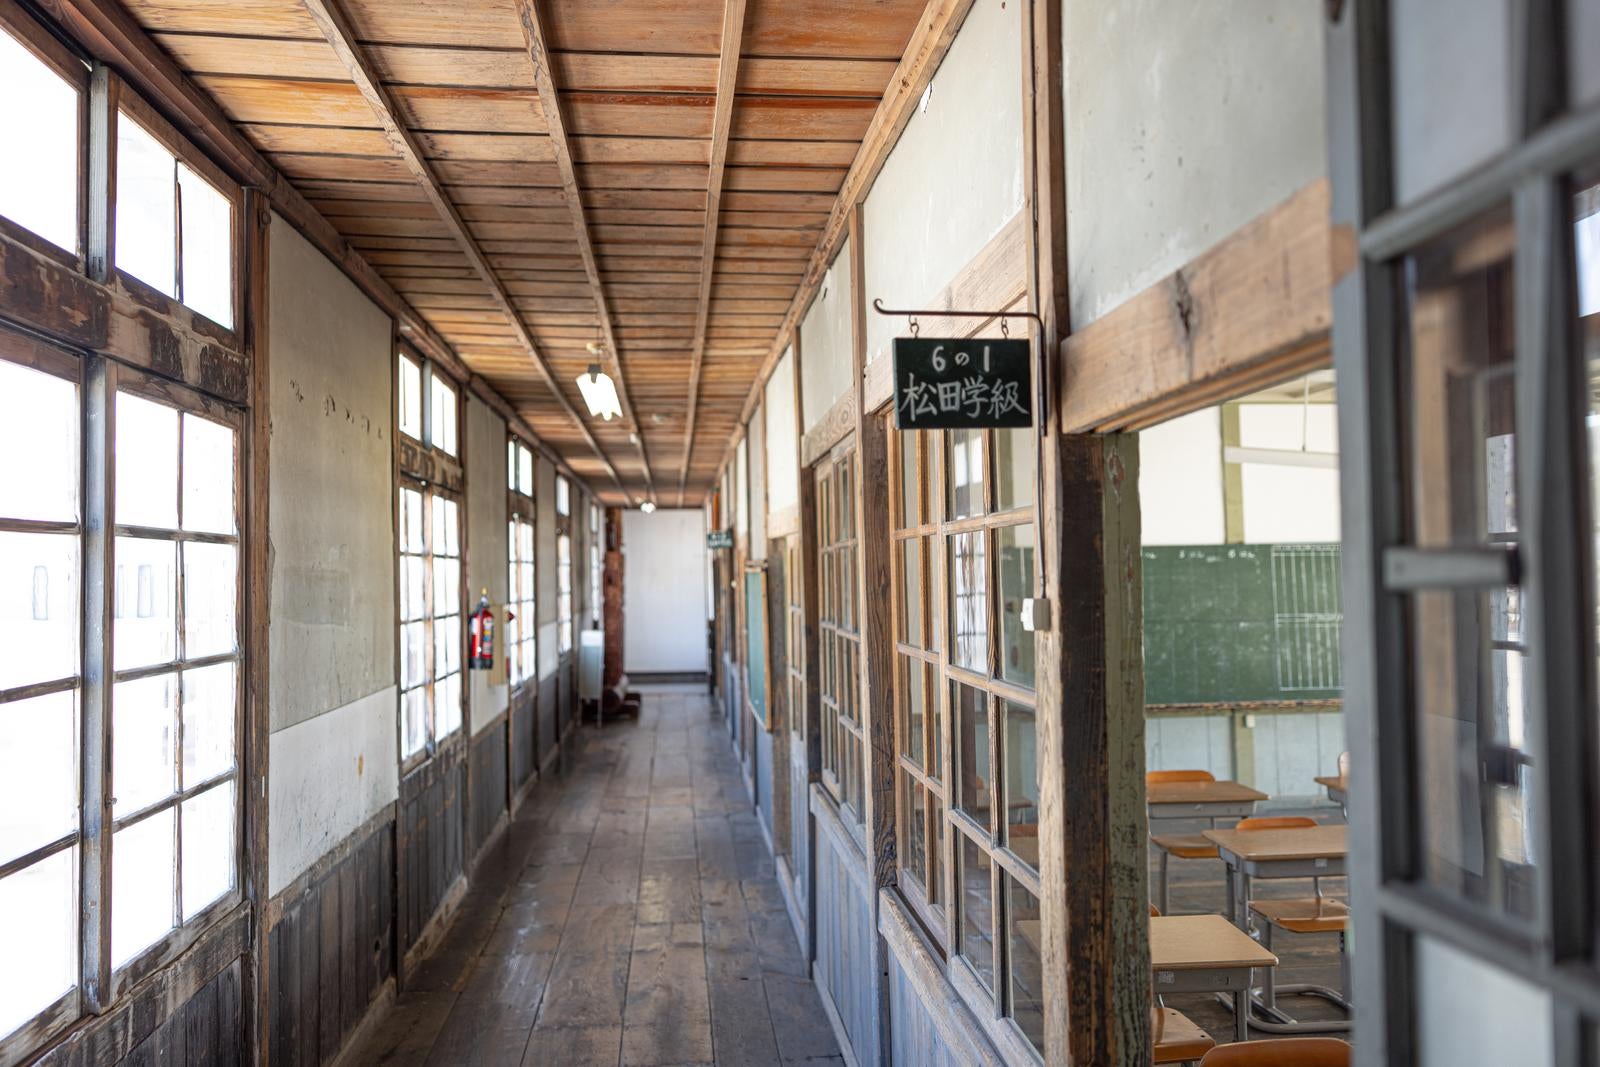 「放課後の学校と廊下の静寂」の写真